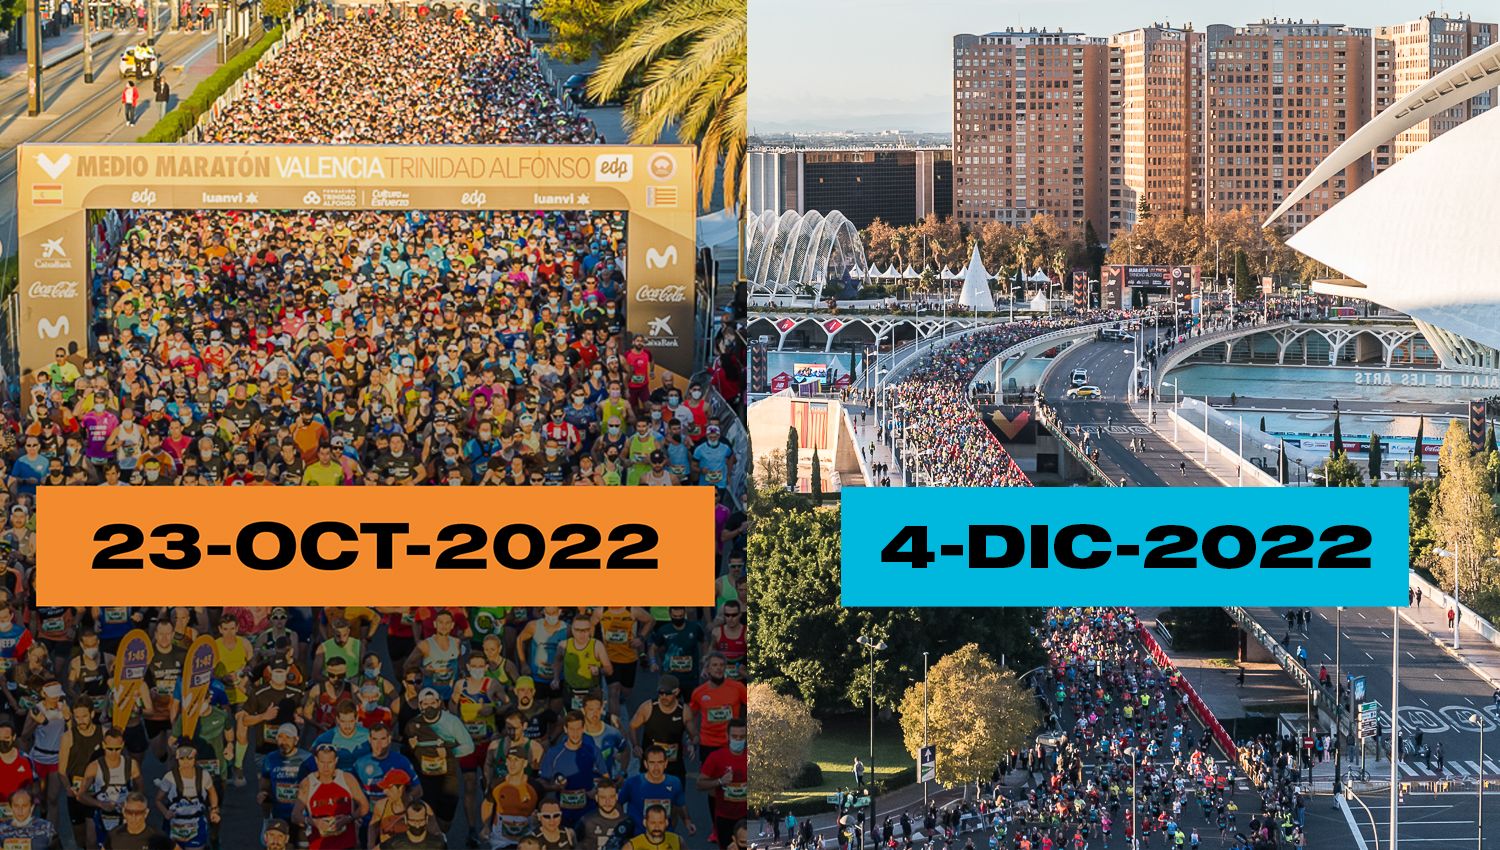 Medio y Maratón Valencia abren inscripciones con objetivos de 20.000 y 30.000 participantes